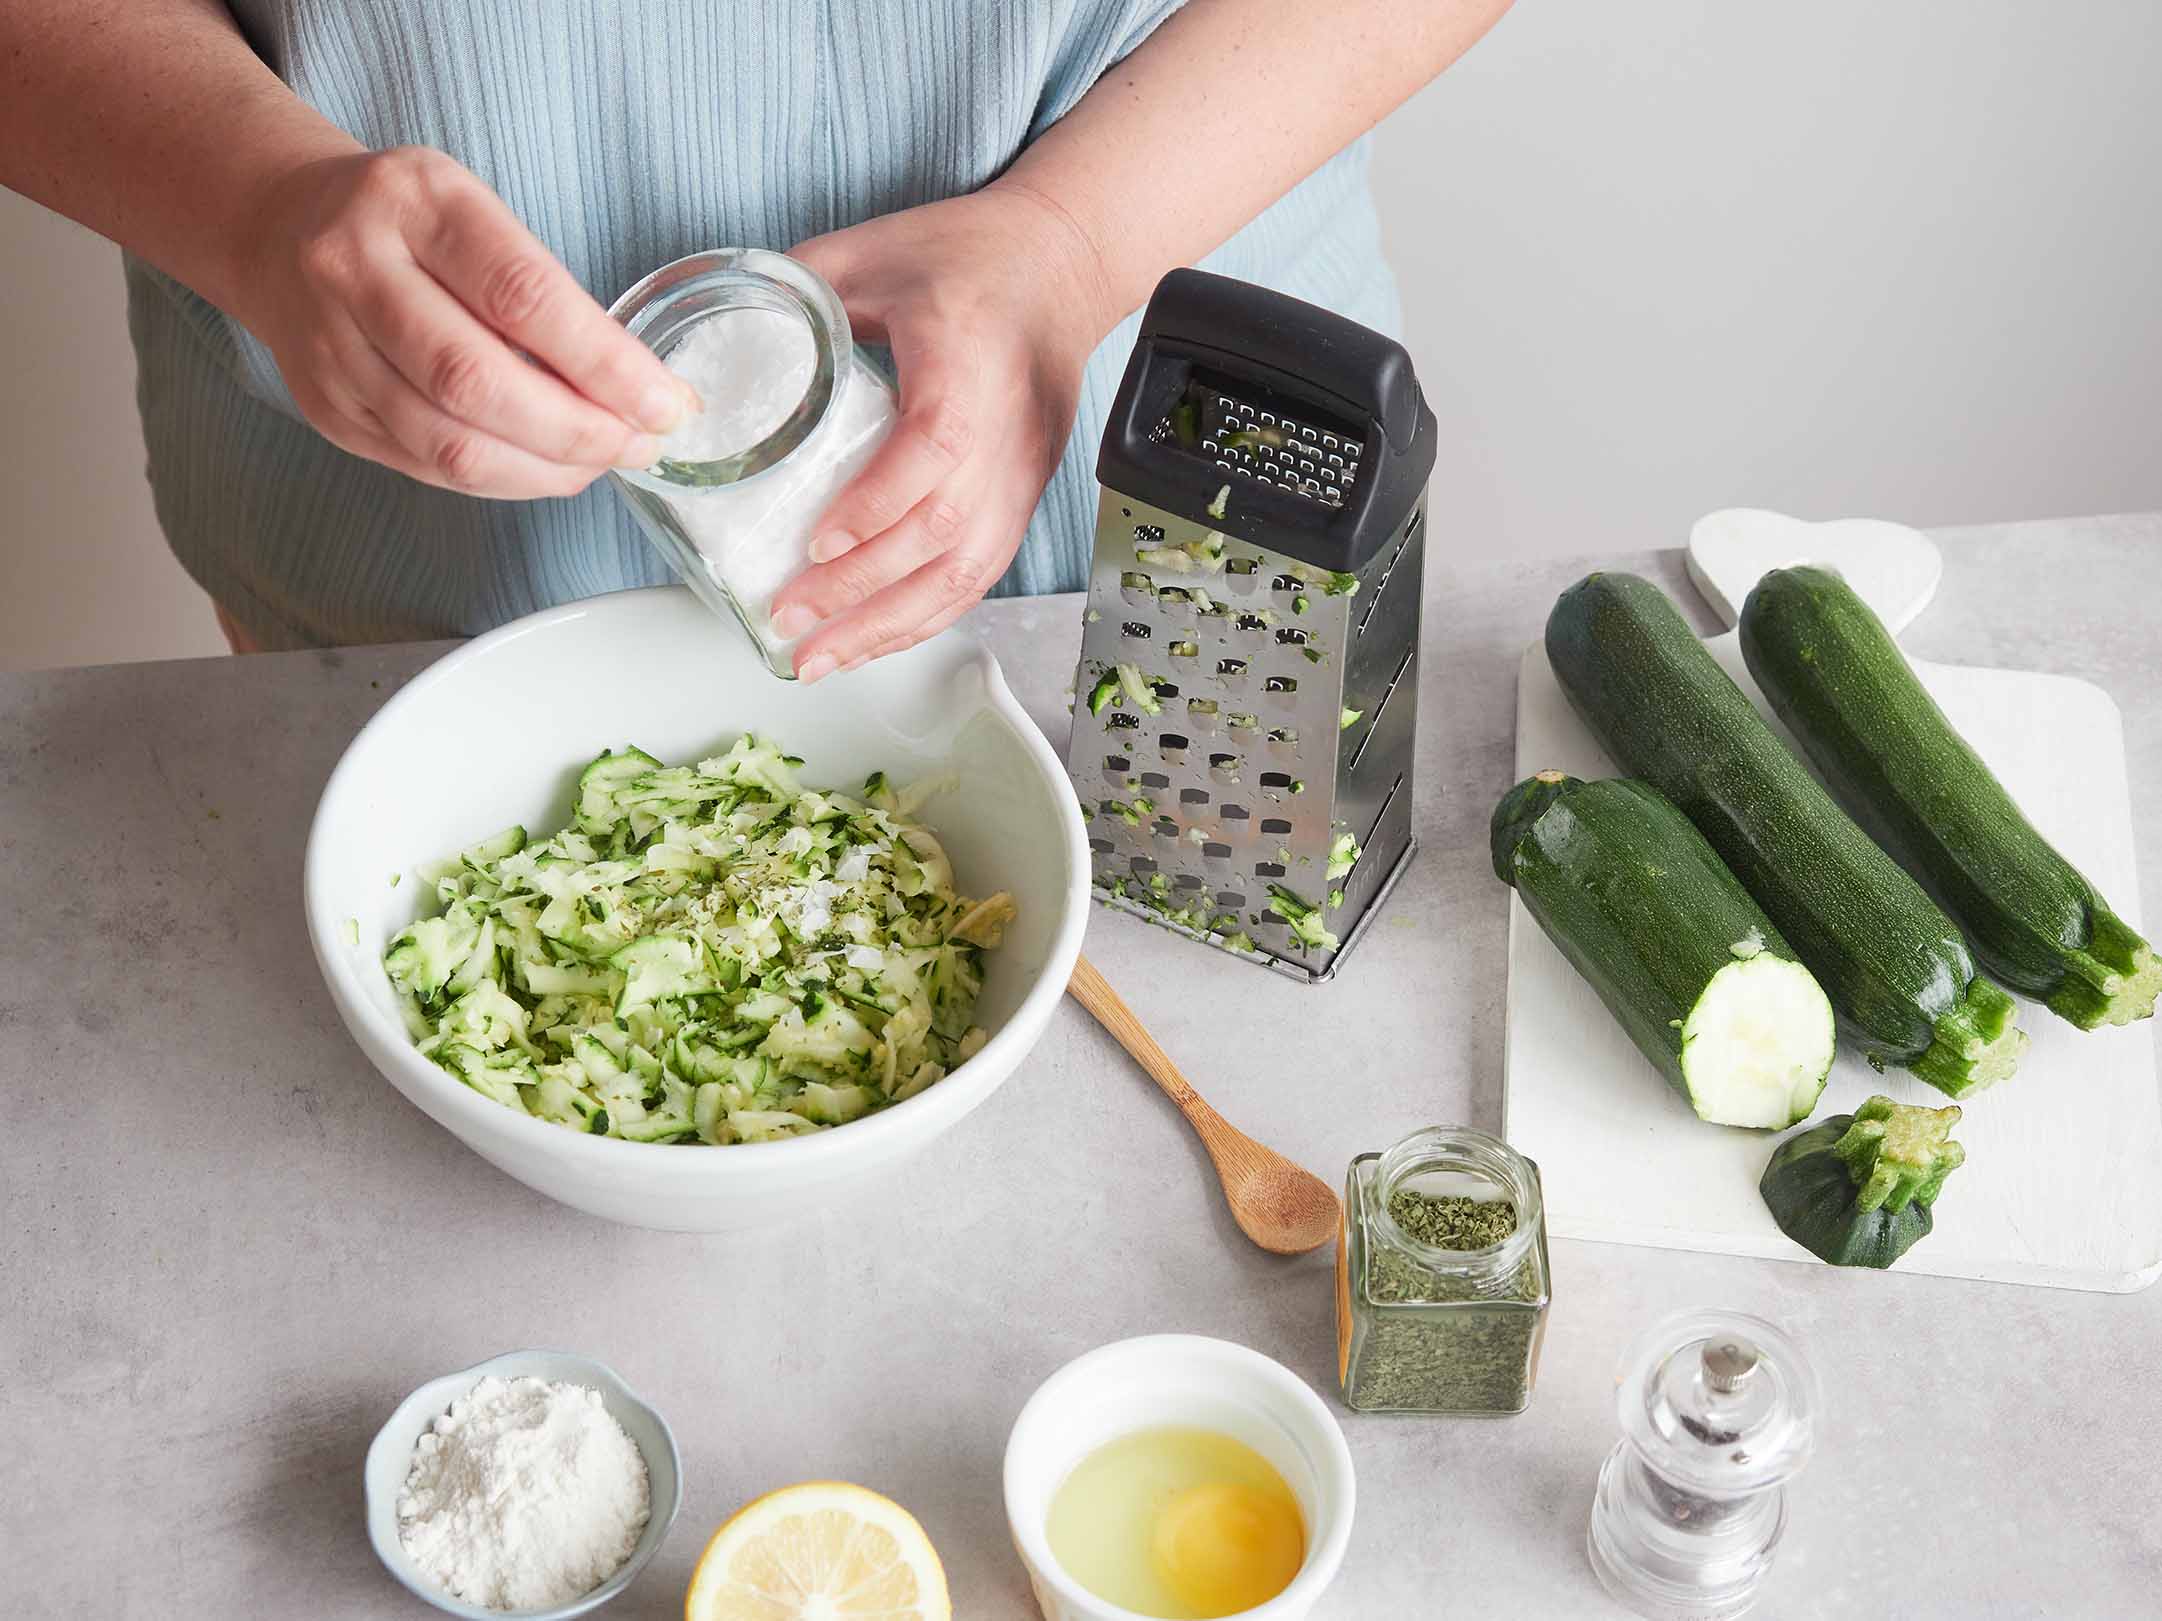 Recette avec courgette - Zucchini recipe